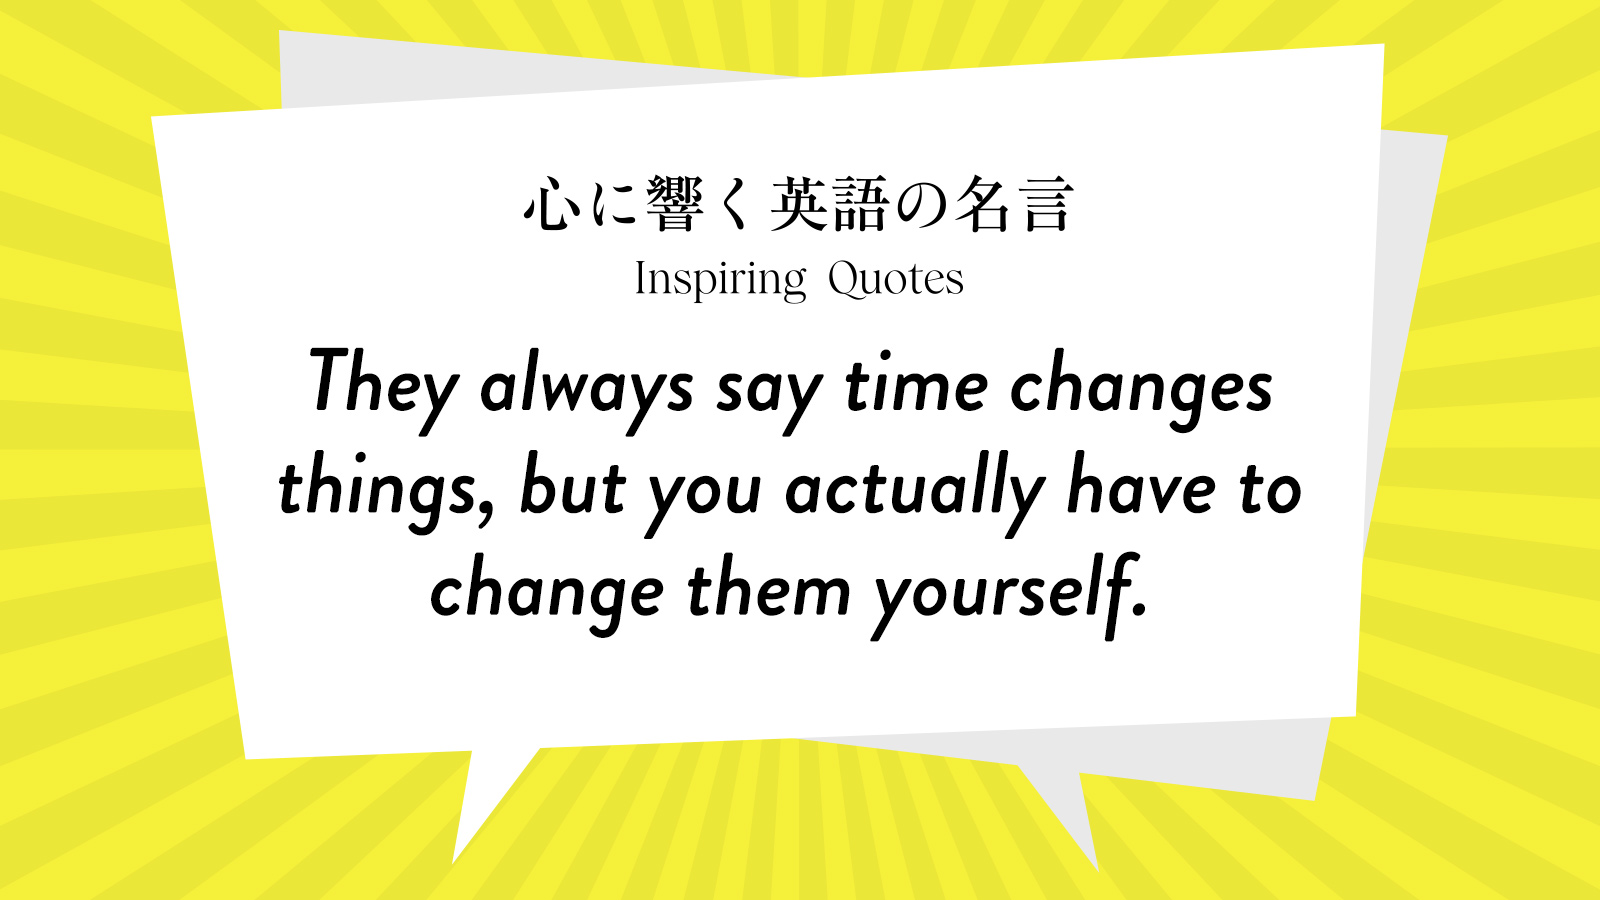 今週の名言 “They always say time changes things, but you actually have to change them yourself.” | Inspiring Quotes: 心に響く英語の名言